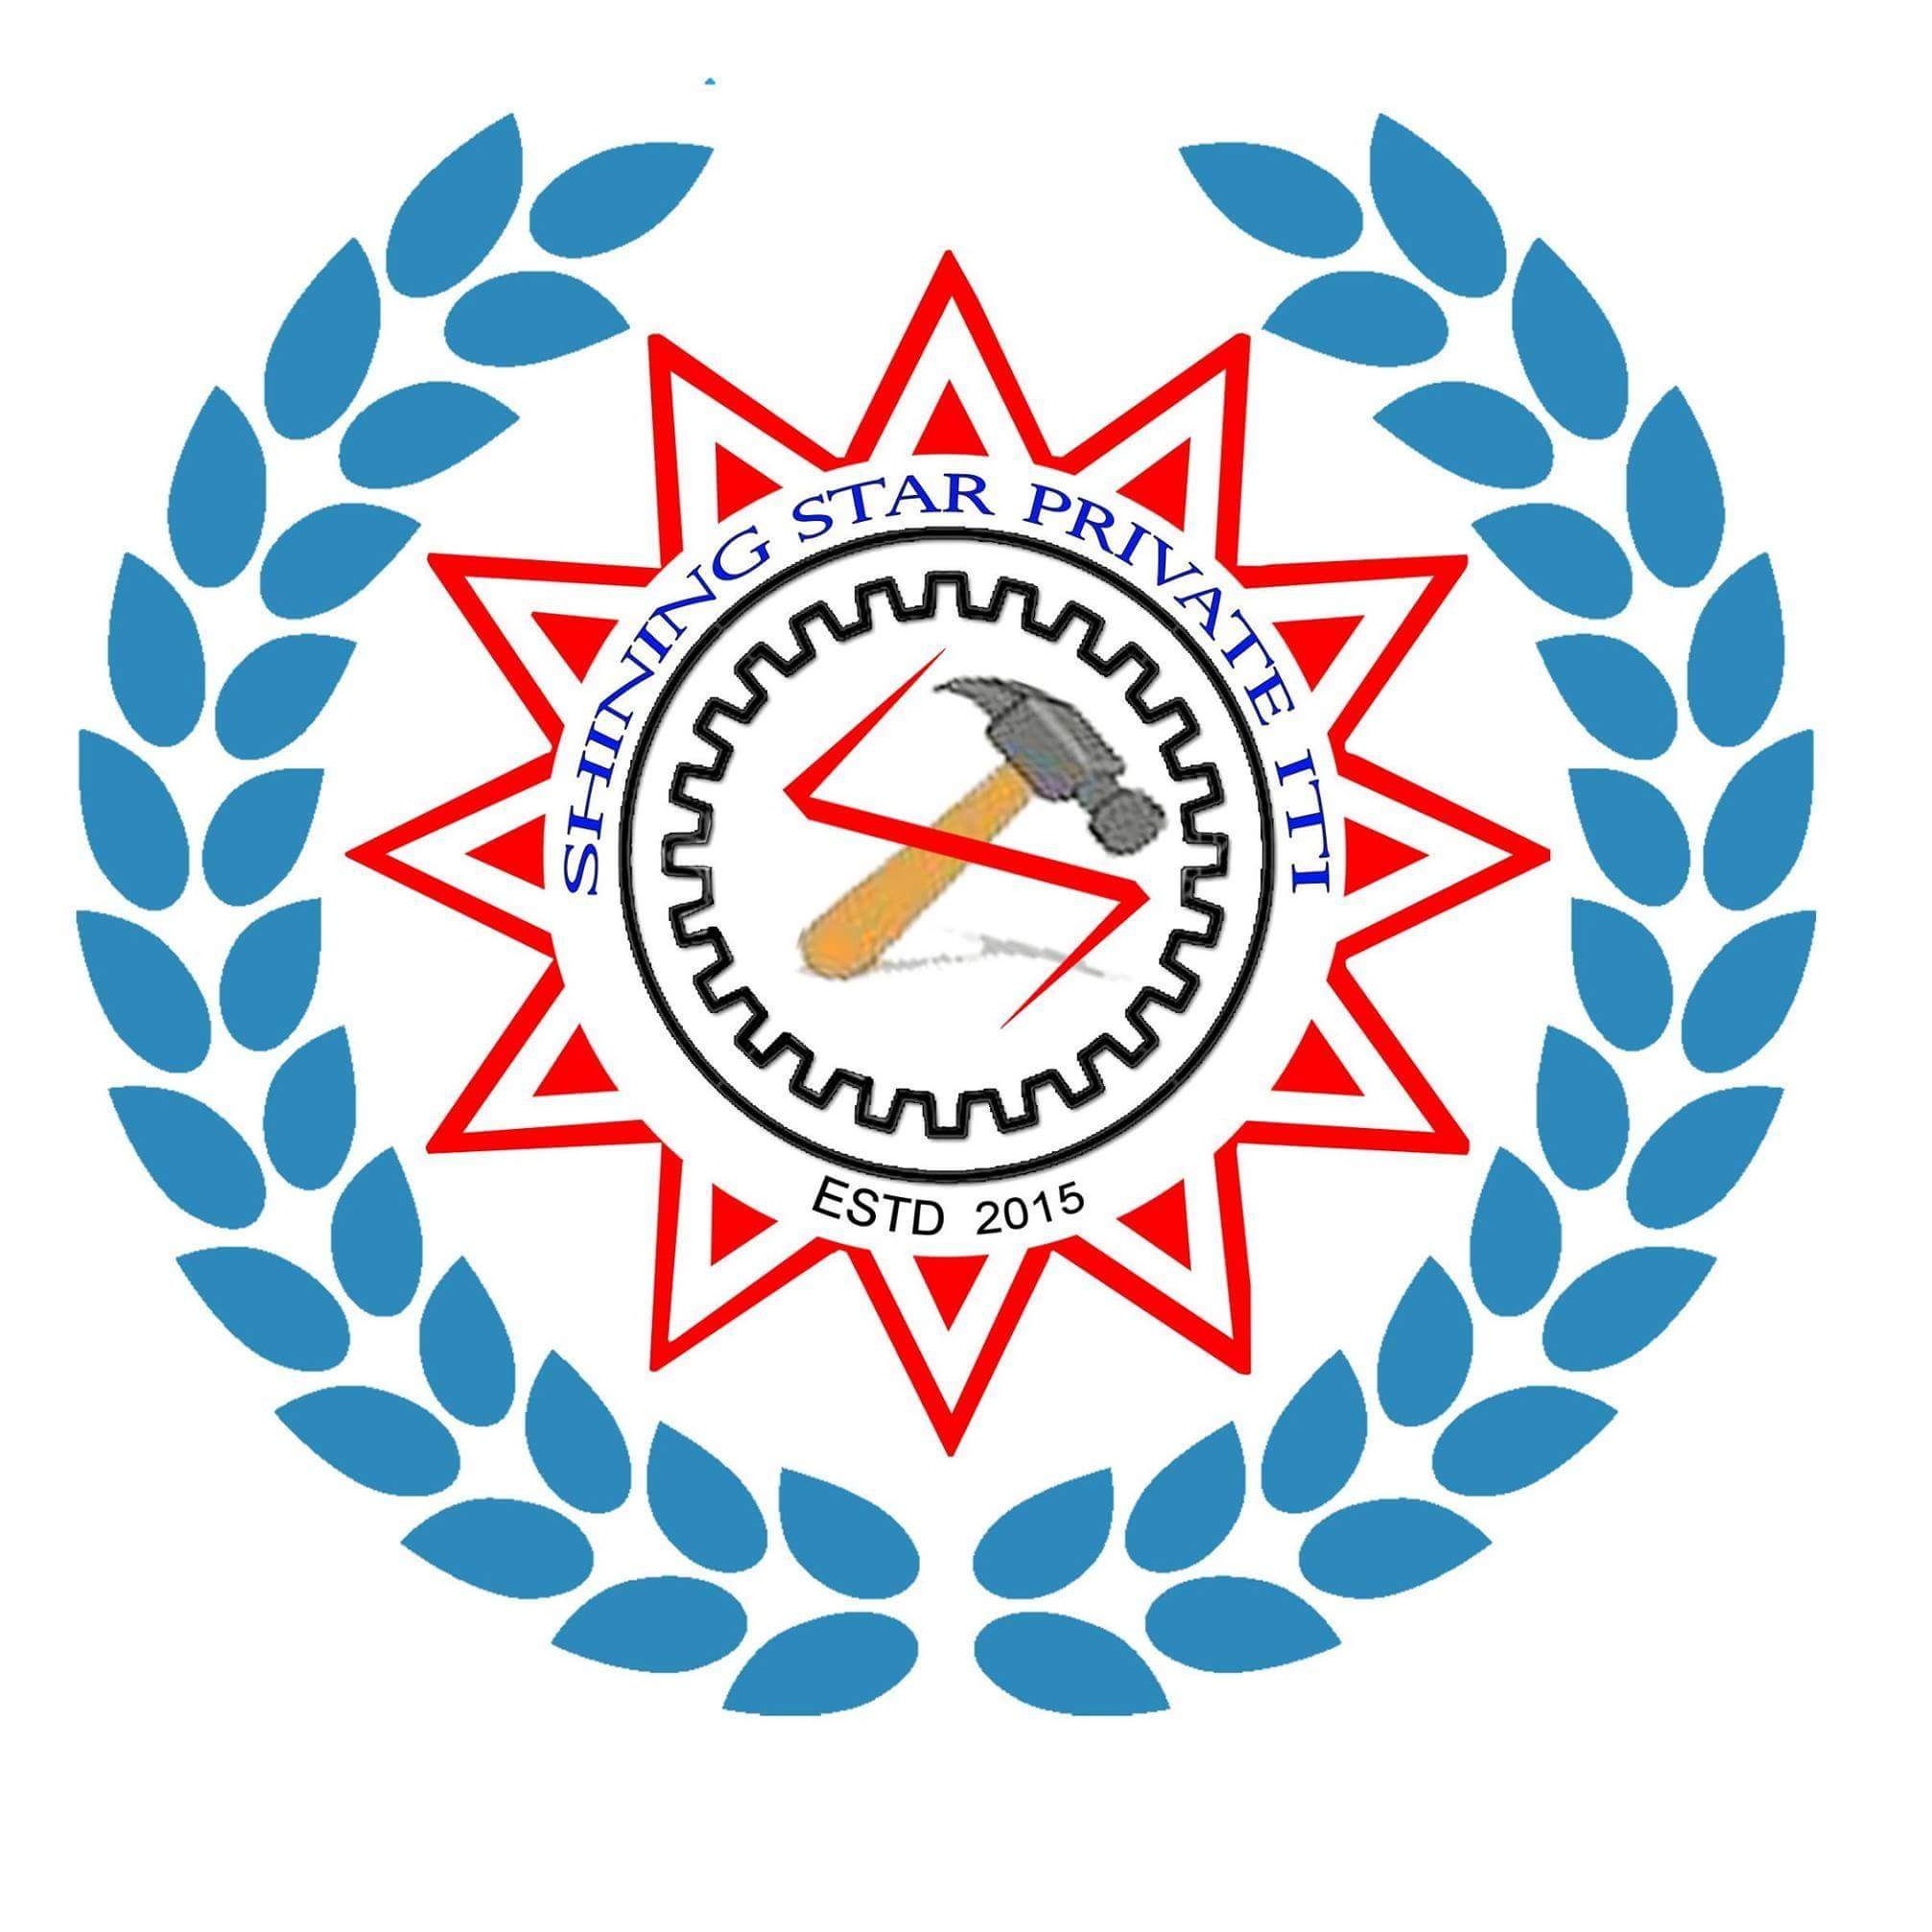 Iti Logo - SHINING STAR Pvt. ITI